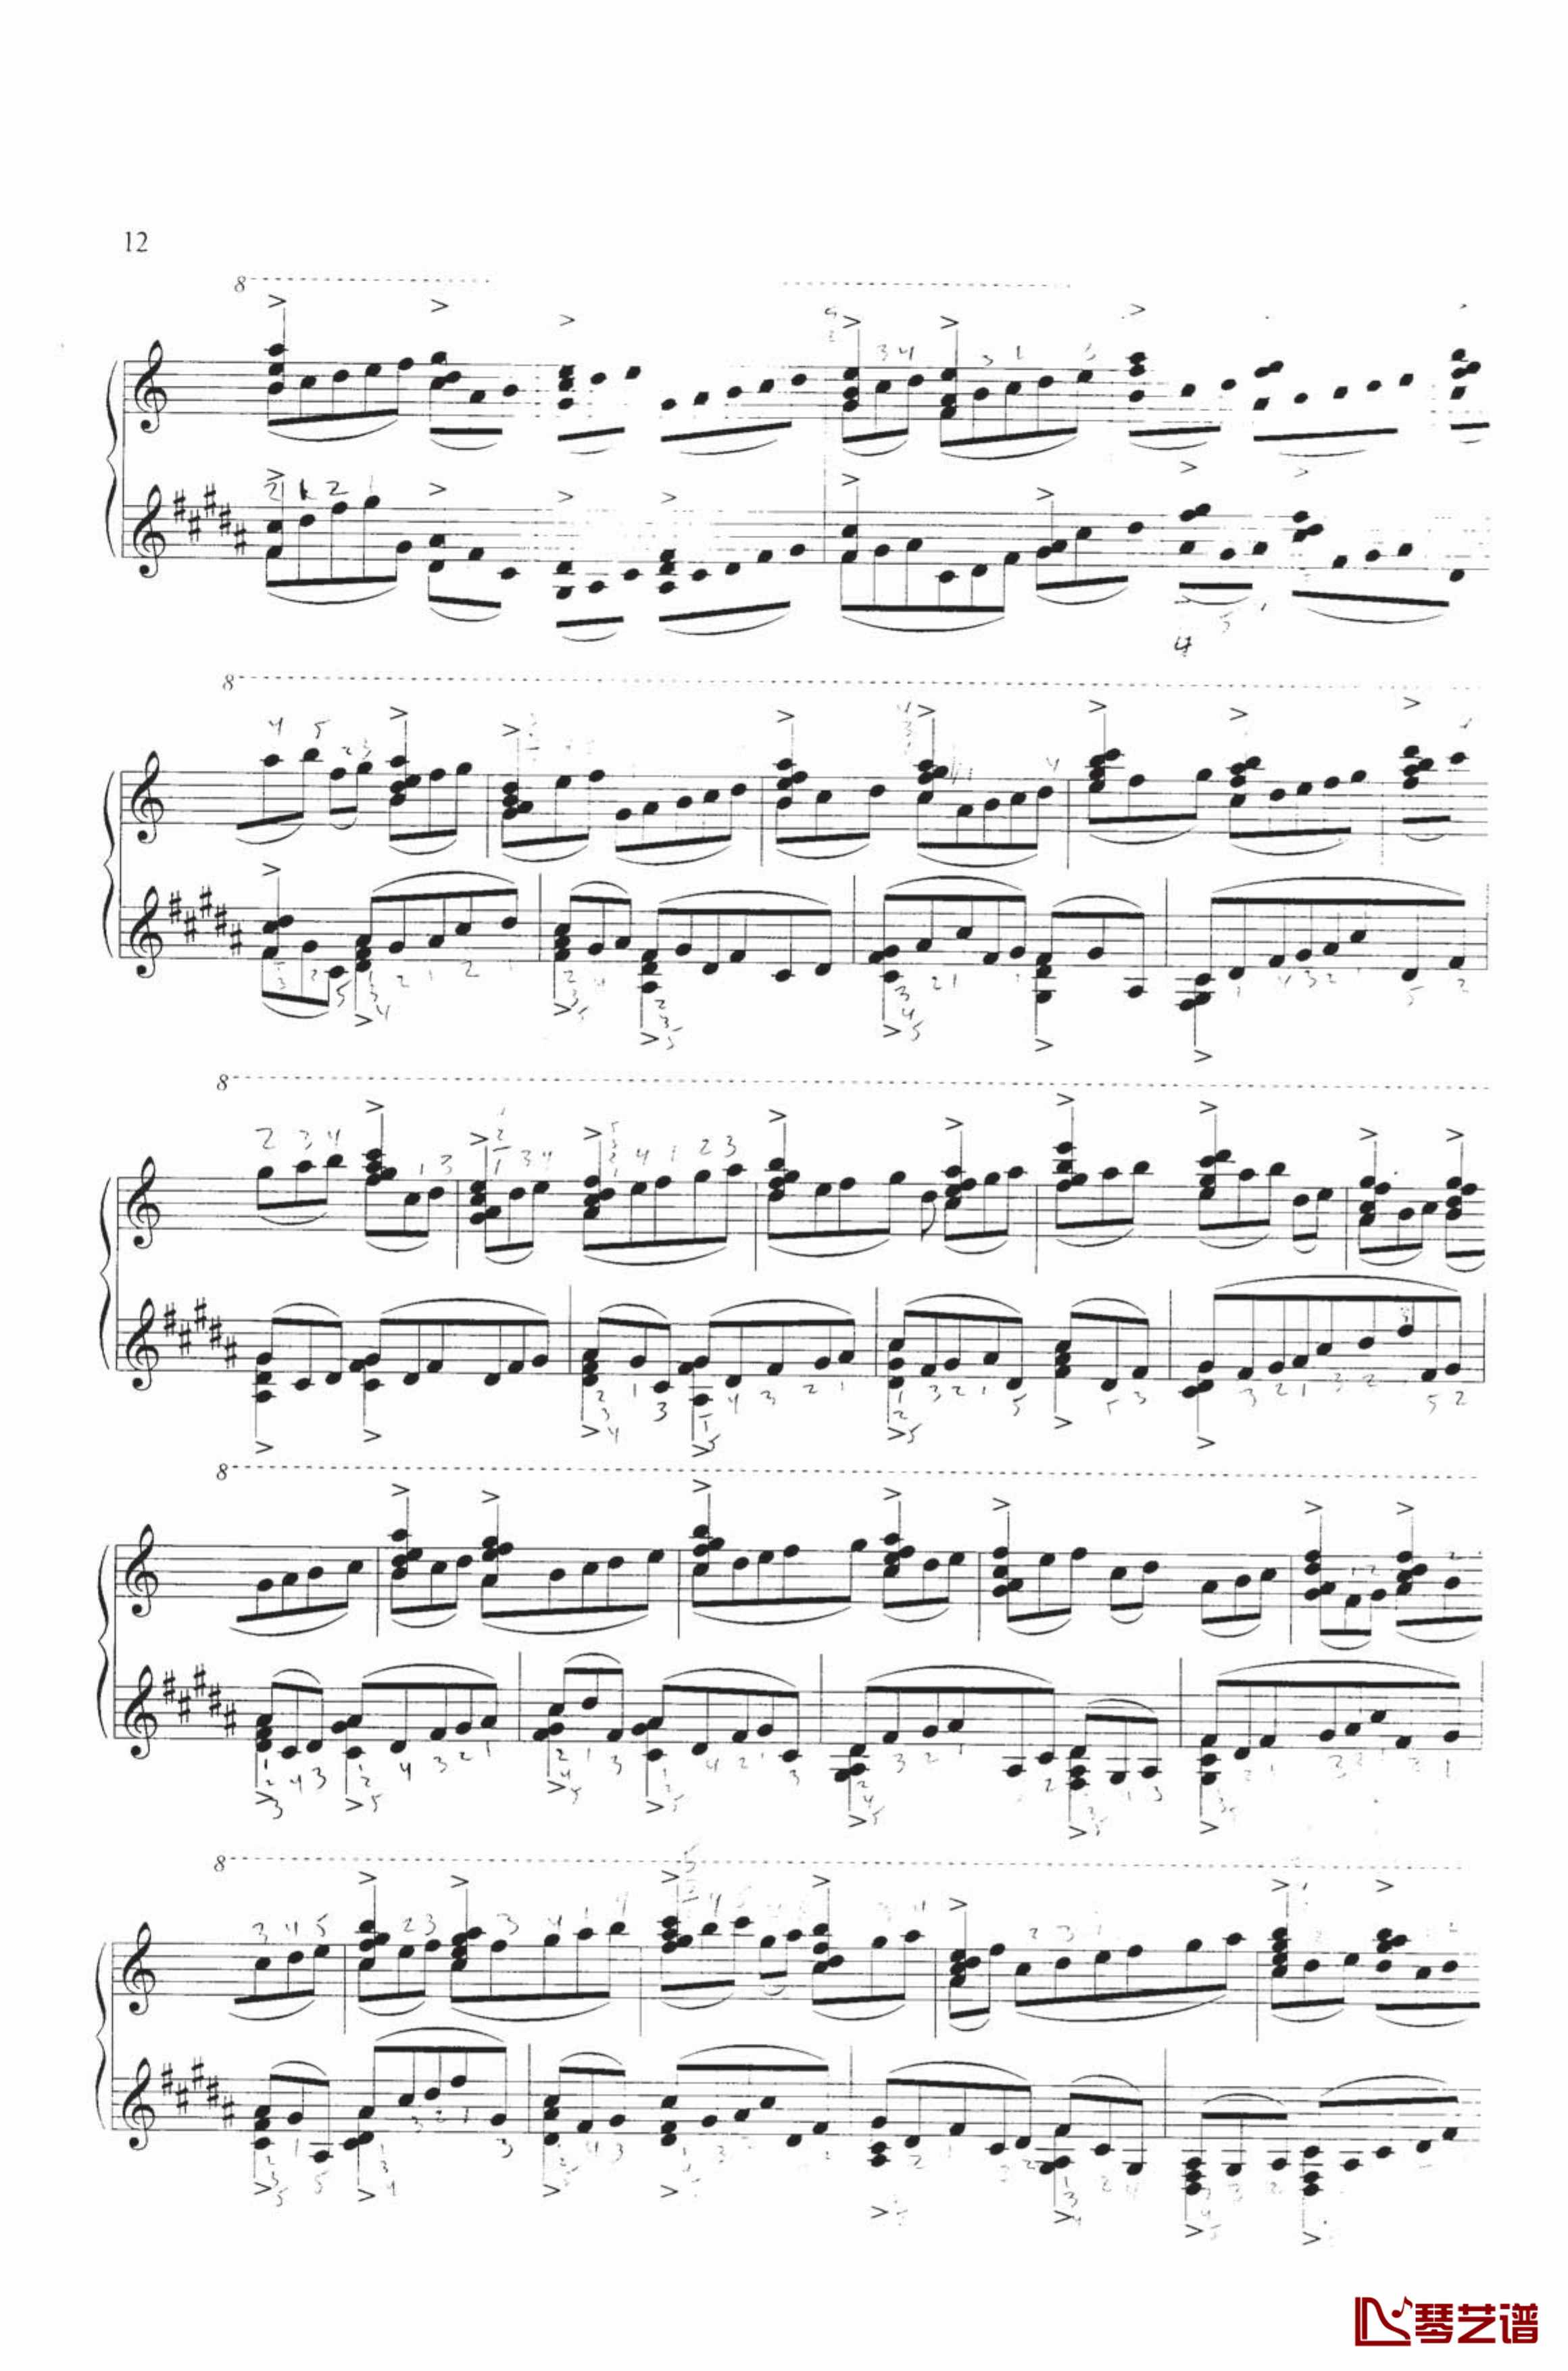 钢琴练习曲NO.1钢琴谱-里盖蒂